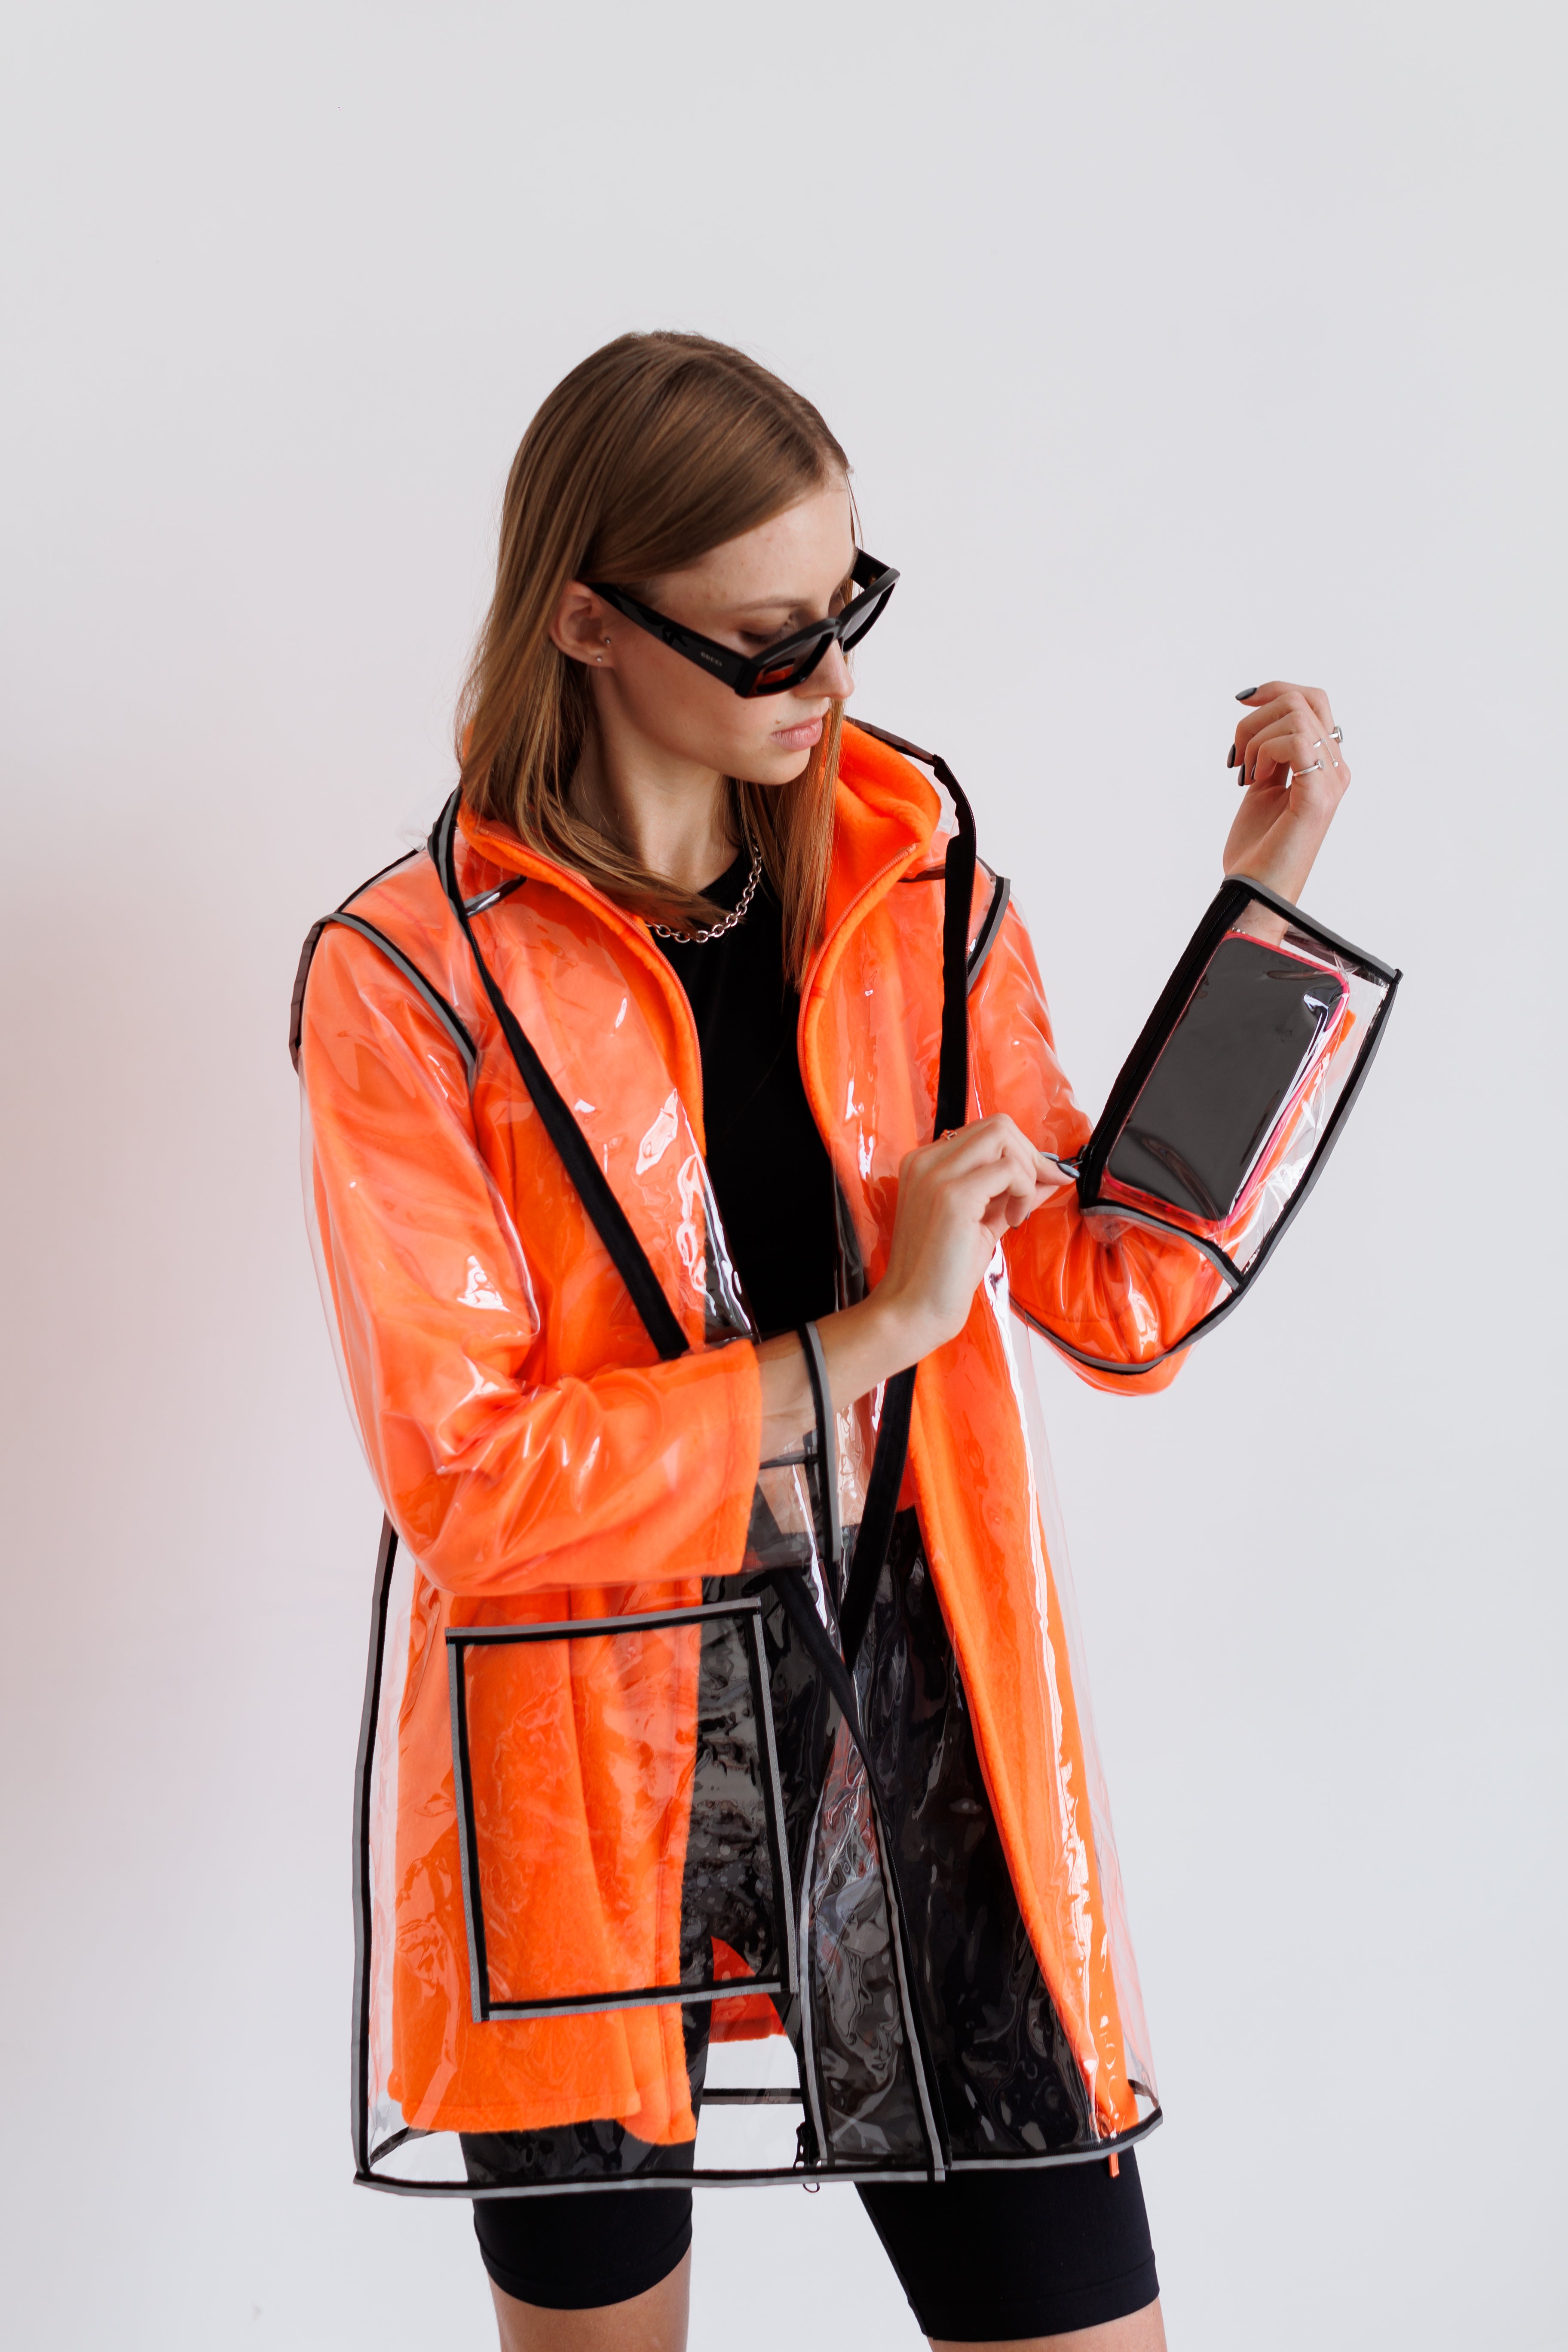 Transparent coat with orange